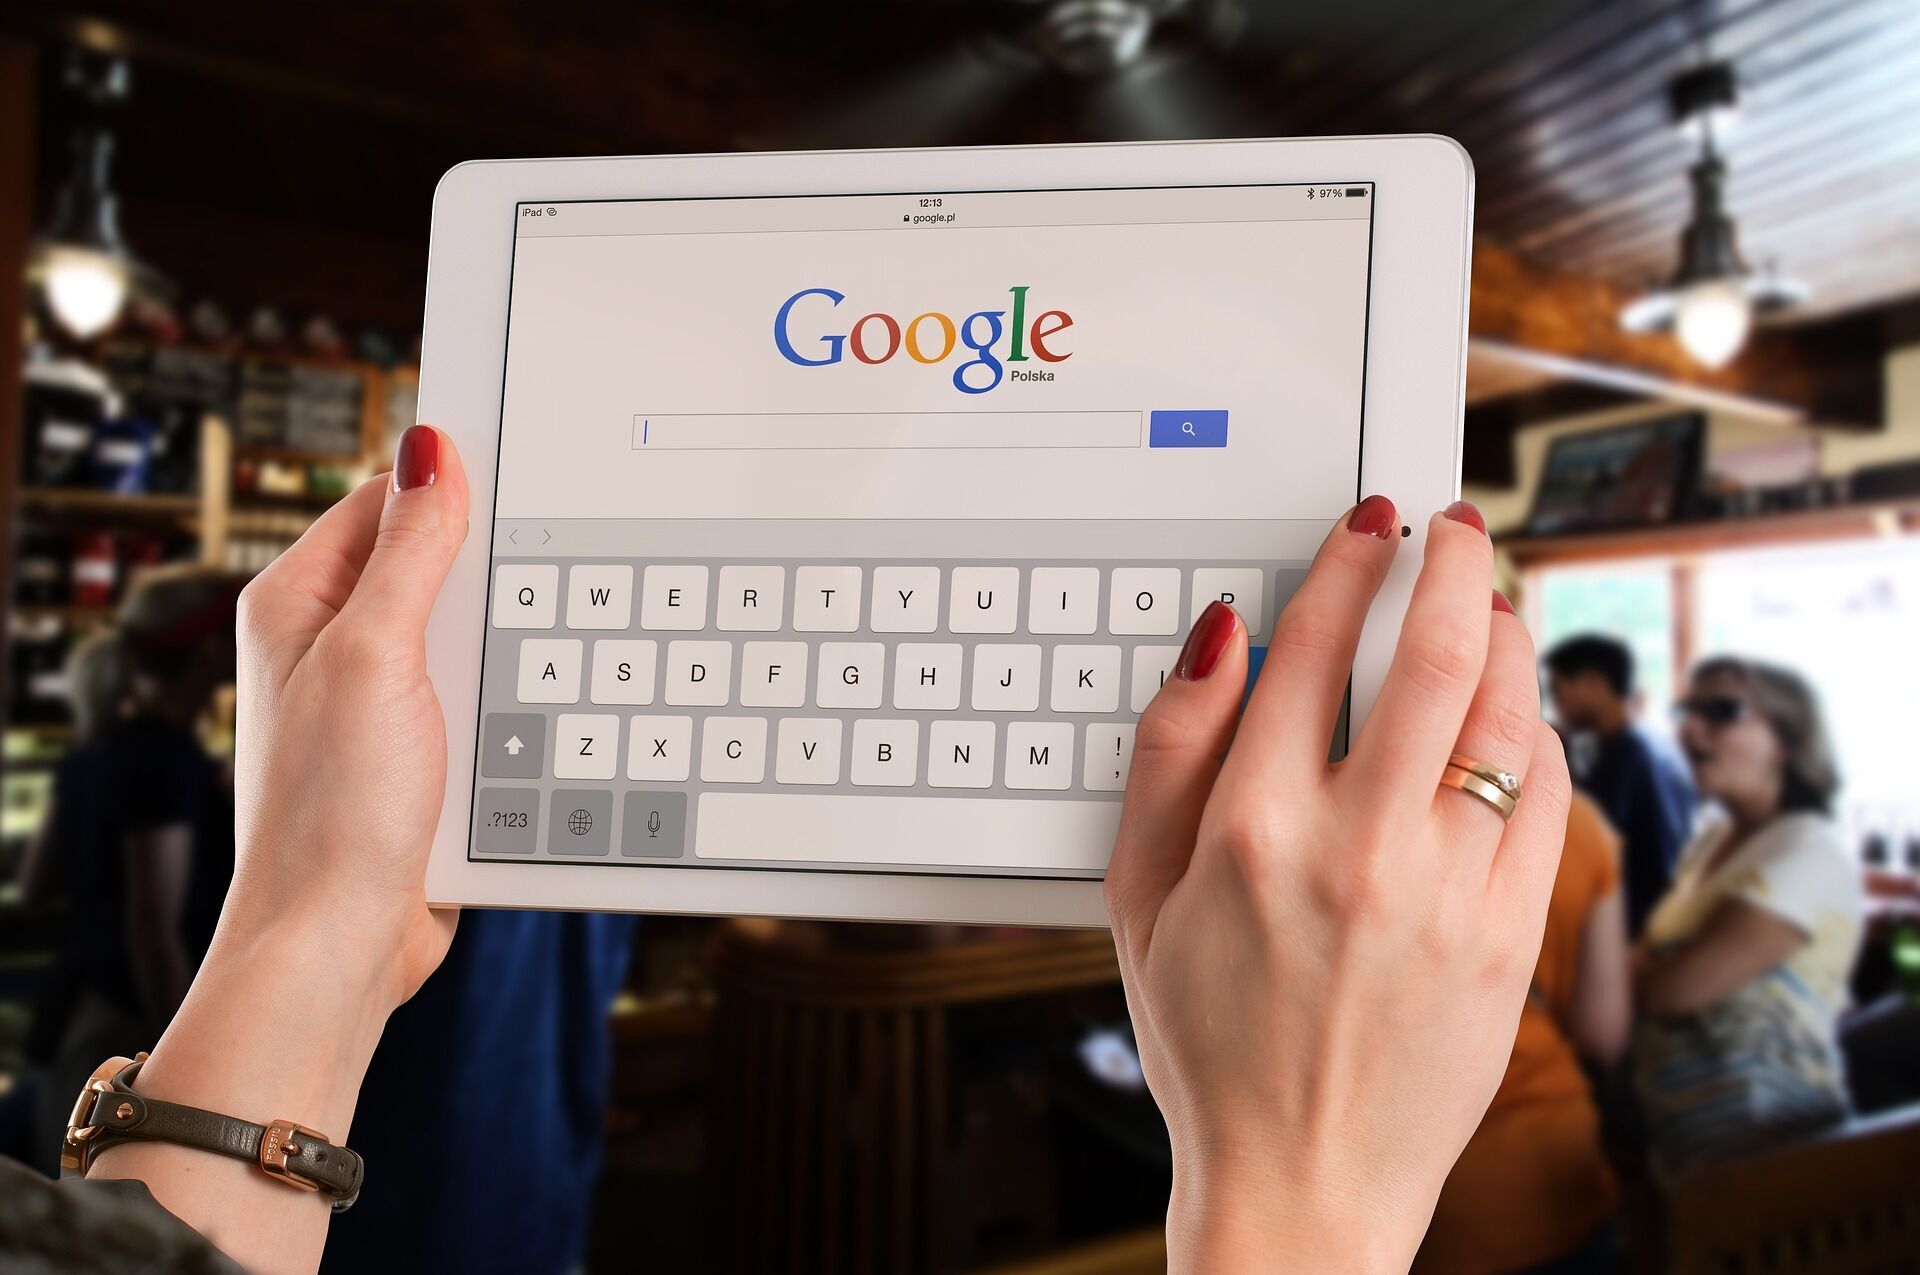 Не можете найти информацию в интернете? 5 советов, как правильно пользоваться поиском Google